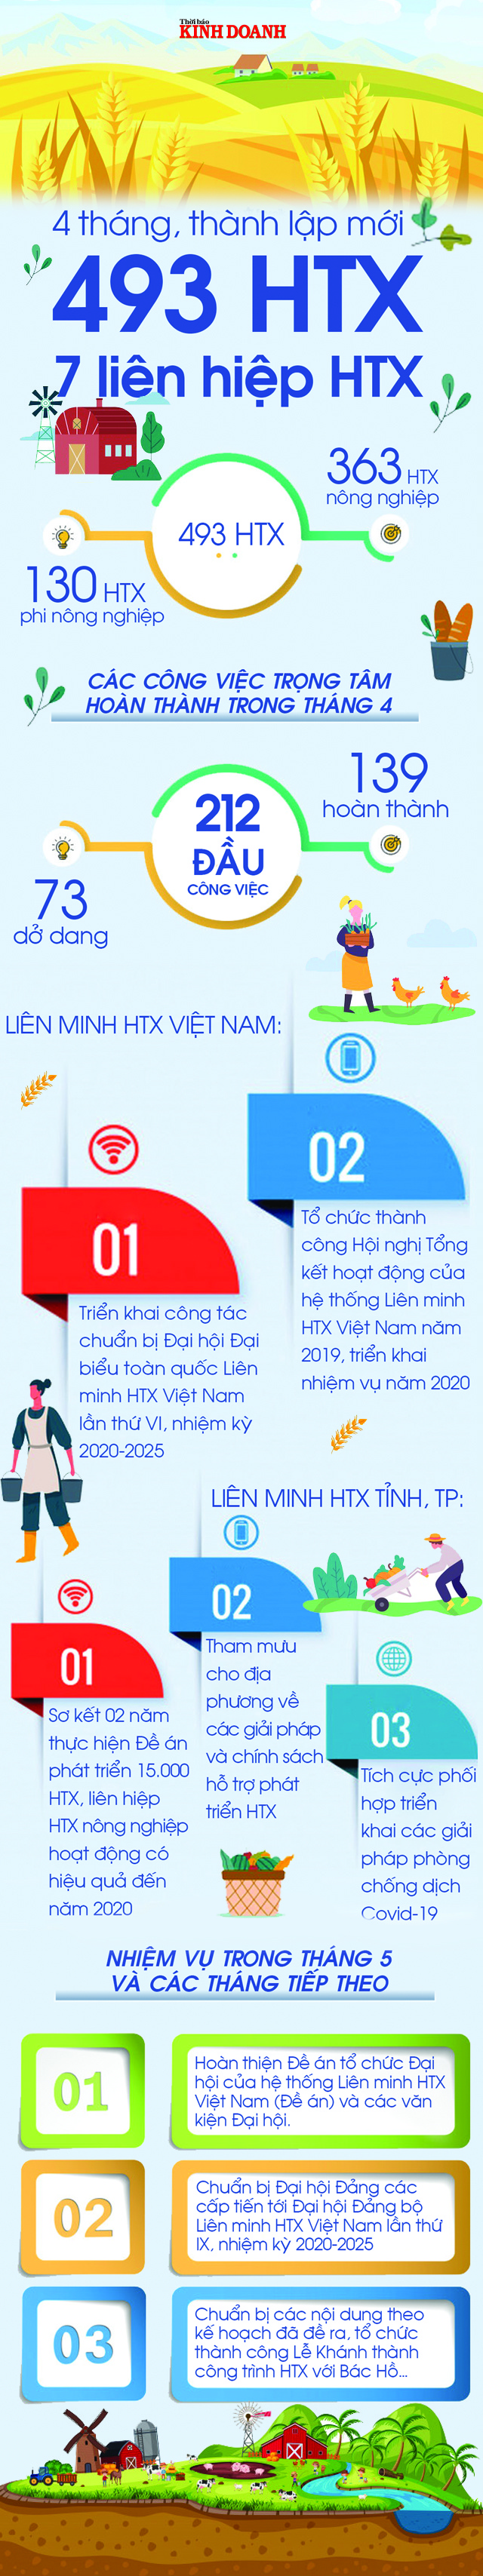 Lie-n-minh-HTX-Vie-t-Nam-1598-1589528966